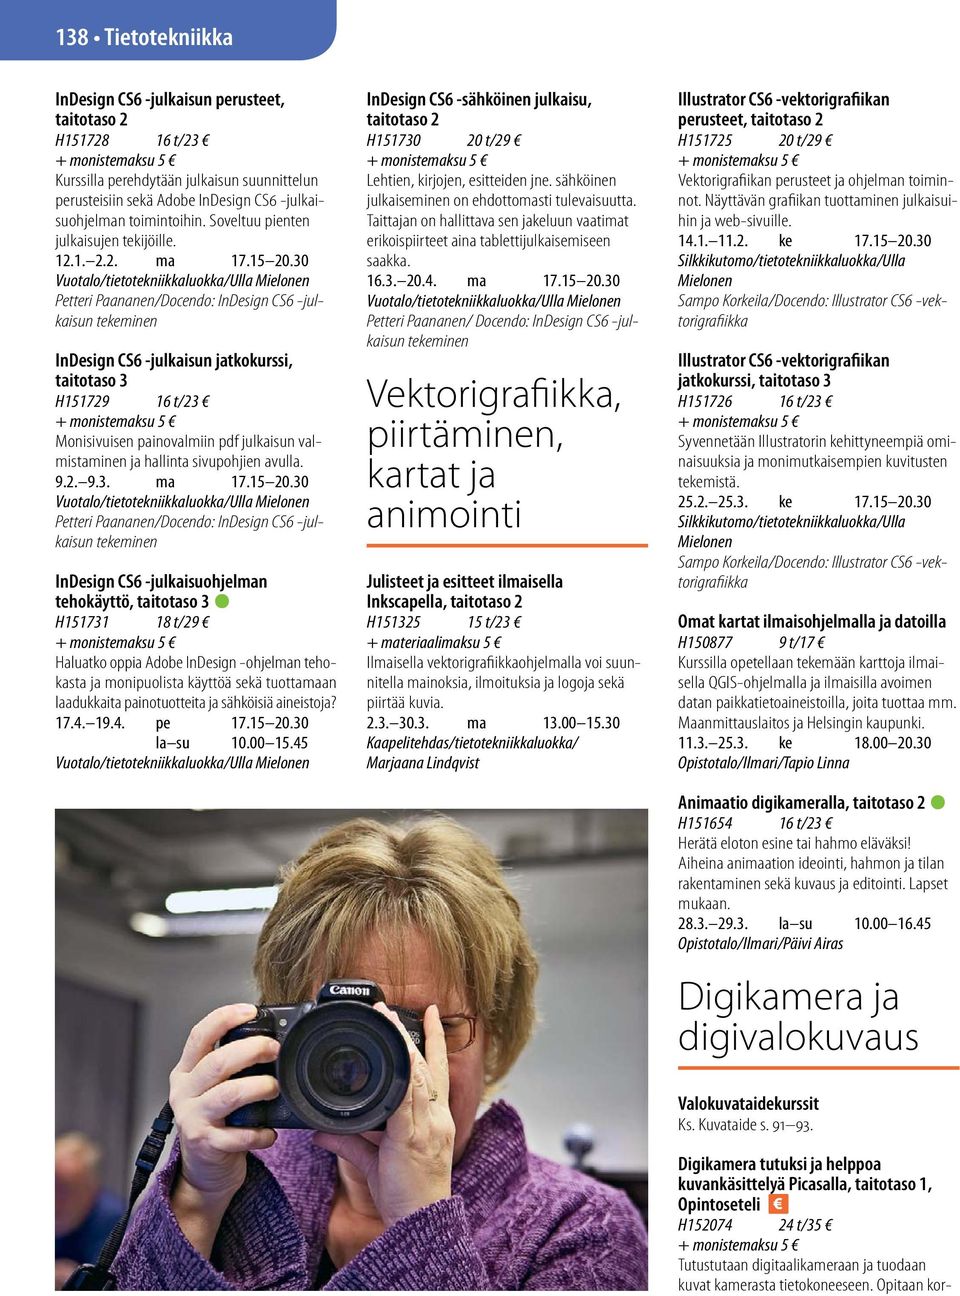 30 Petteri Paananen/Docendo: InDesign CS6 -julkaisun tekeminen InDesign CS6 -julkaisun jatkokurssi, H151729 16 t/23 Monisivuisen painovalmiin pdf julkaisun valmistaminen ja hallinta sivupohjien